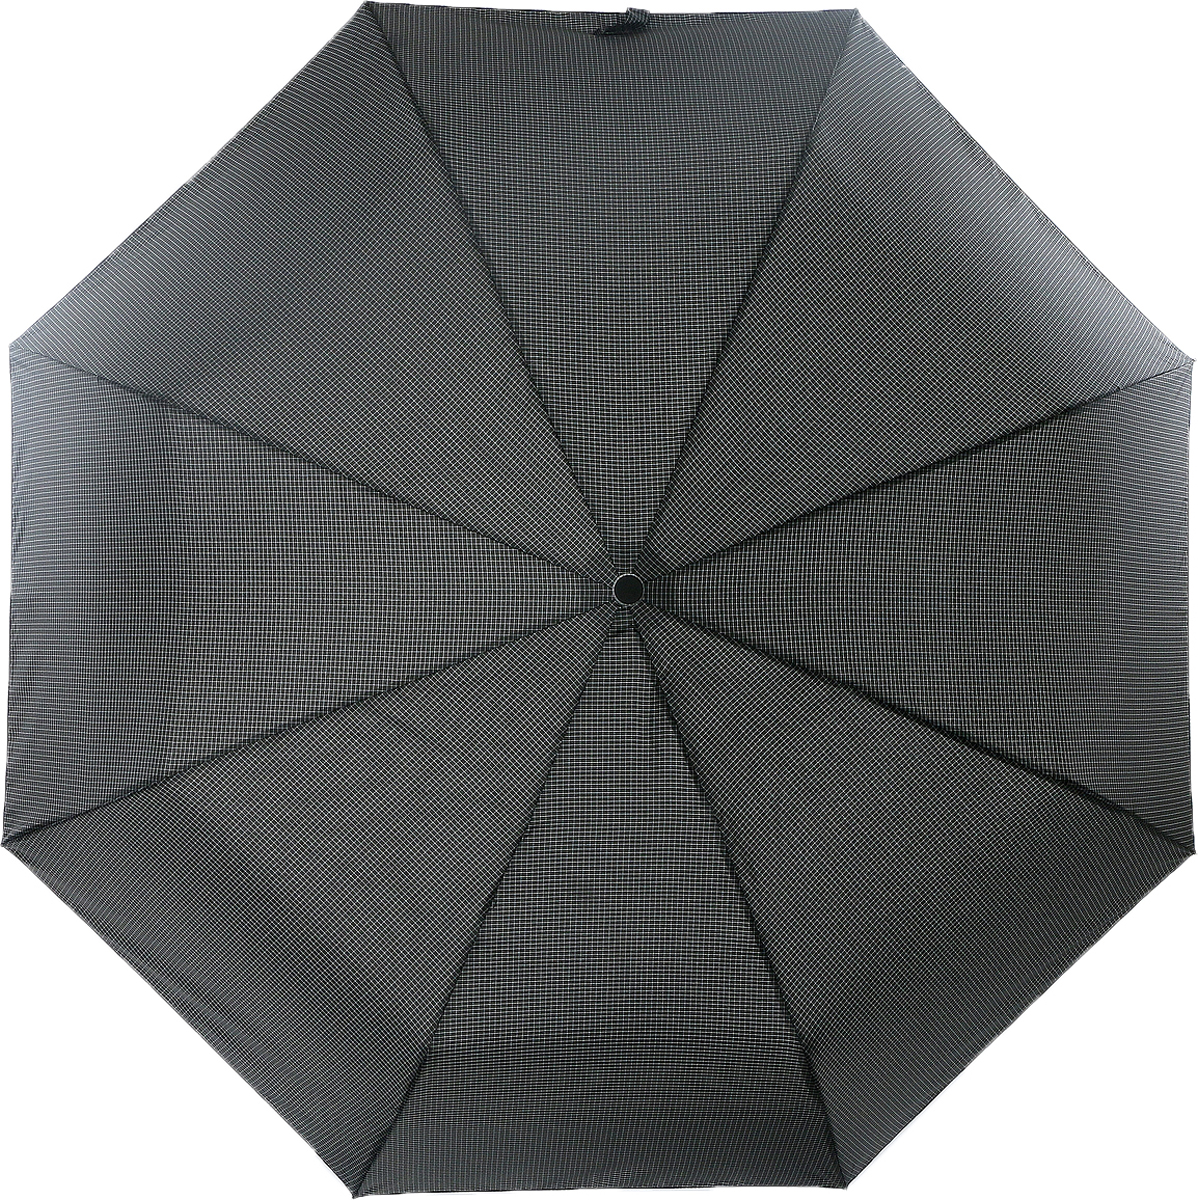 Зонт мужской Magic Rain, автомат, 3 сложения, цвет: черный, белый. 7025-1704